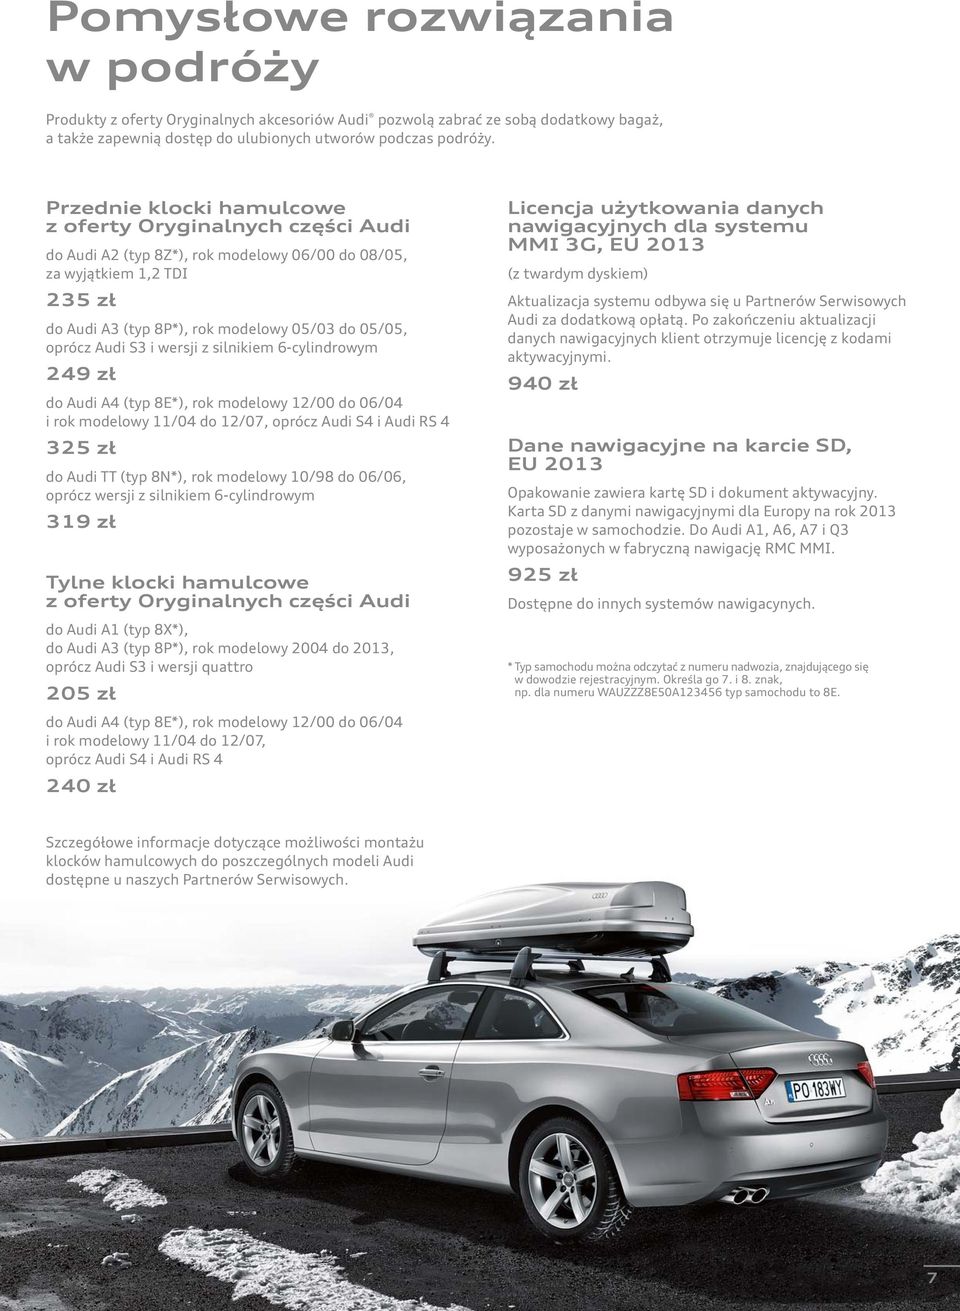 Audi S3 i wersji z silnikiem 6-cylindrowym 249 zł do Audi A4 (typ 8E*), rok modelowy 12/00 do 06/04 i rok modelowy 11/04 do 12/07, oprócz Audi S4 i Audi RS 4 325 zł do Audi TT (typ 8N*), rok modelowy